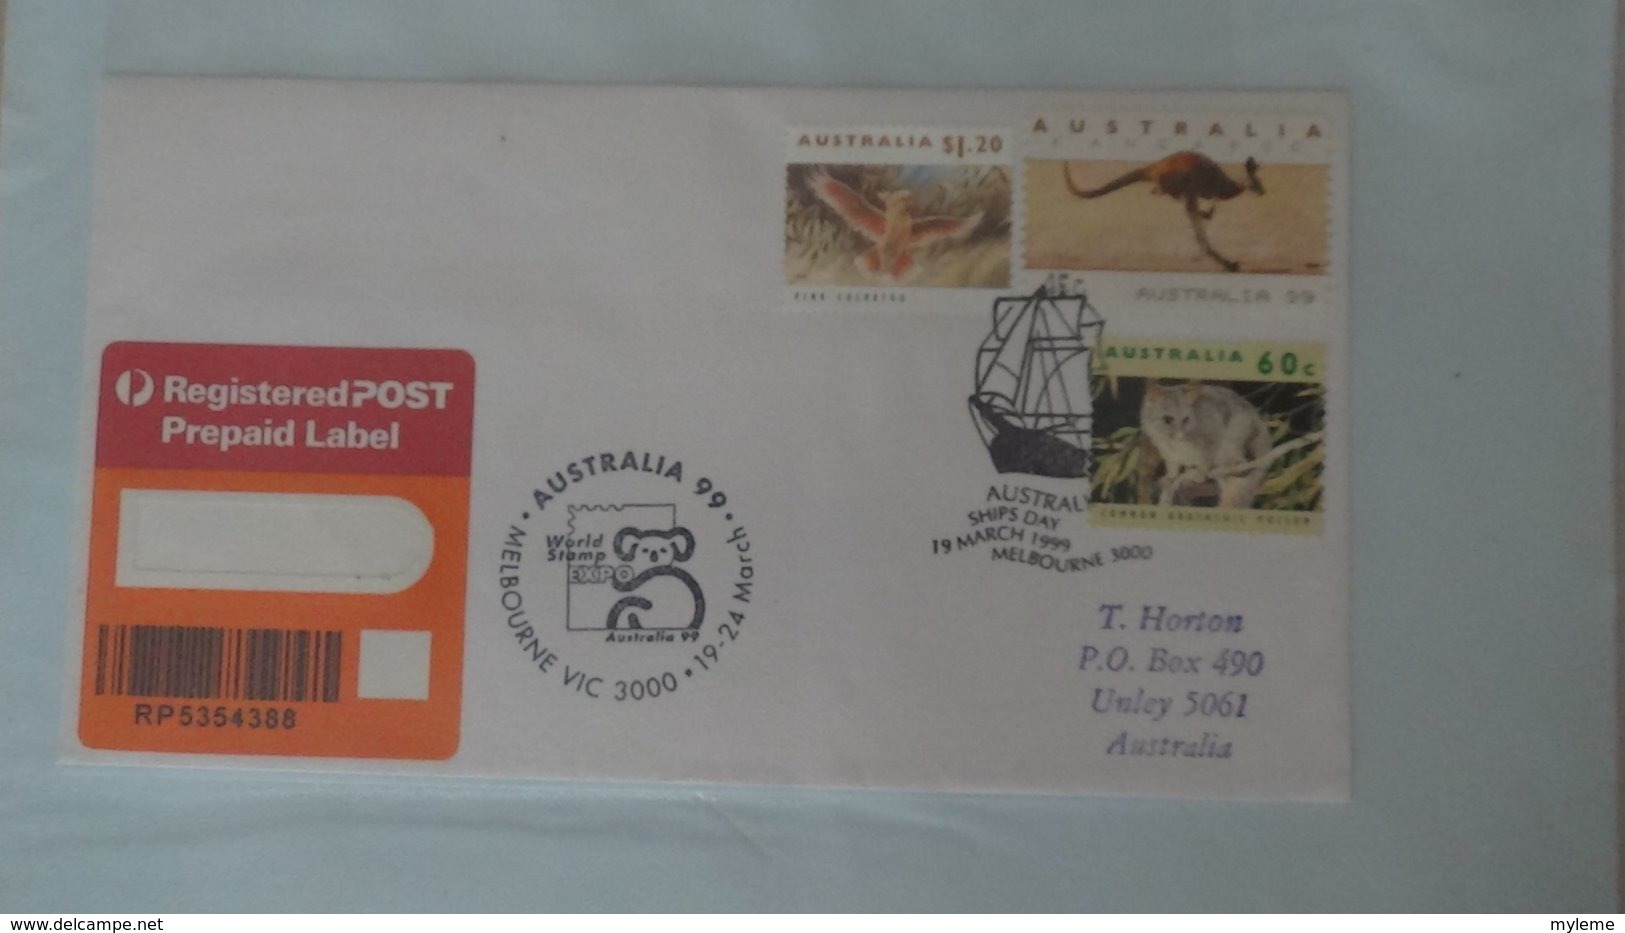 Dispersion d'une collection d'enveloppe 1er jour et autres dont 107 d'AUSTRALIE